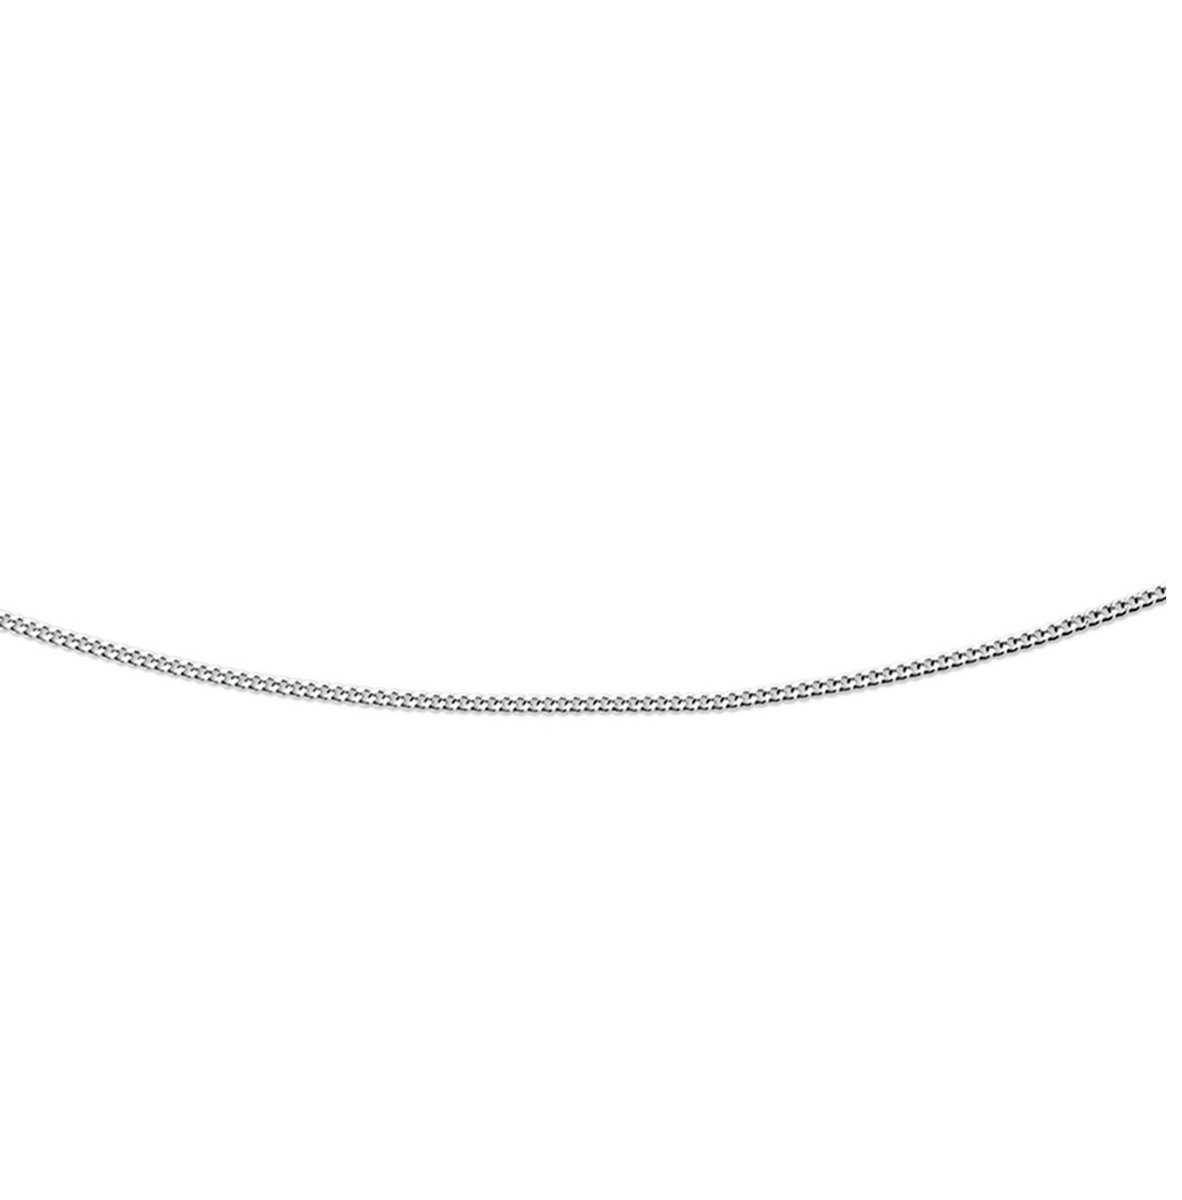 Witgouden ketting 14krt – 42cm - uitverkoop - Kasius 41.02193